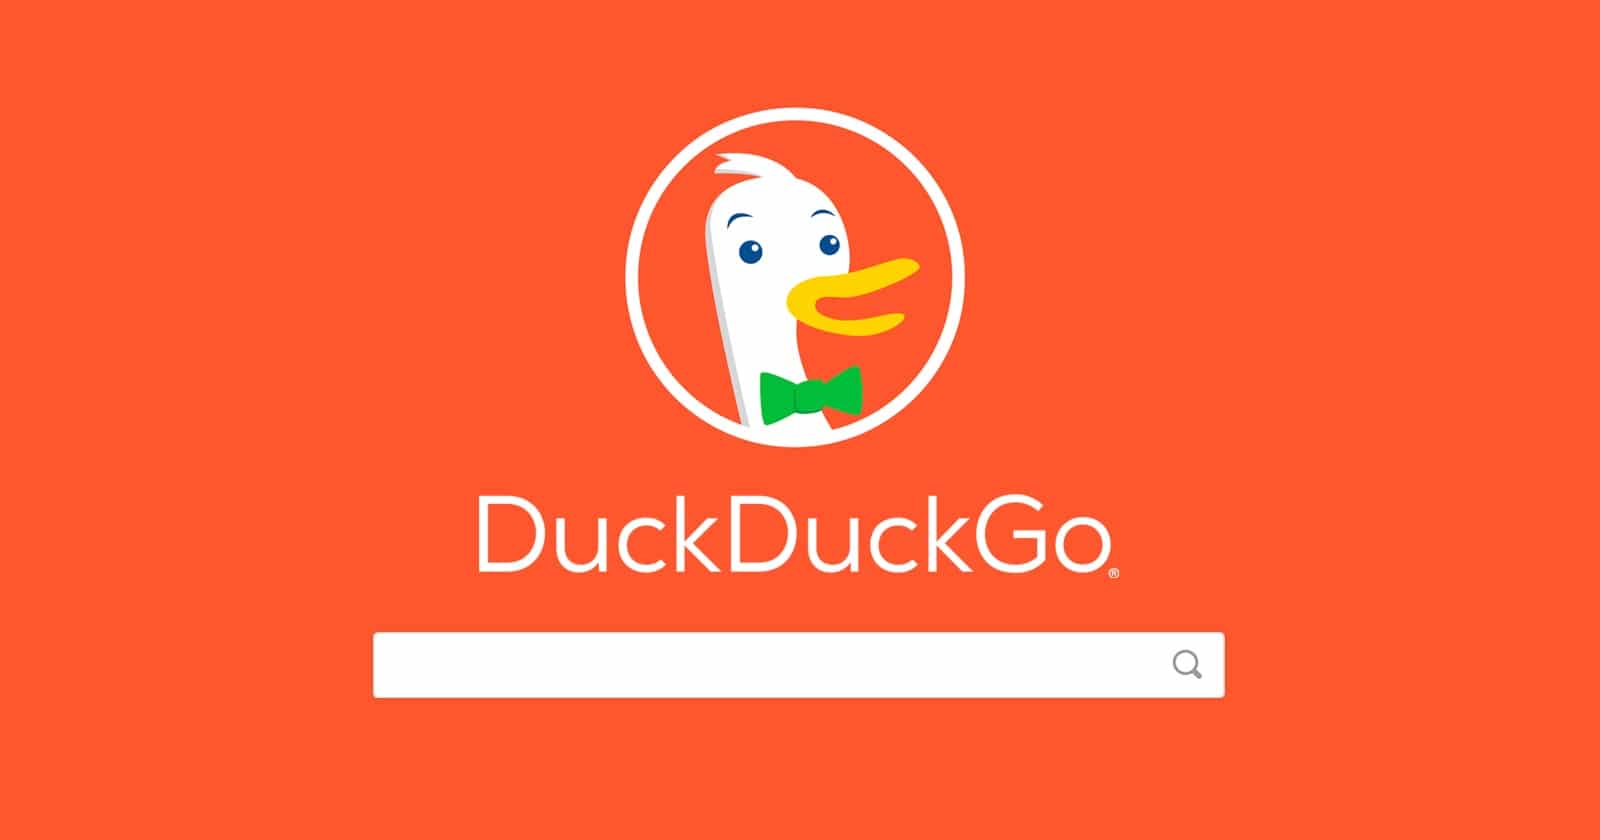 Why is DuckDuckGo Bad